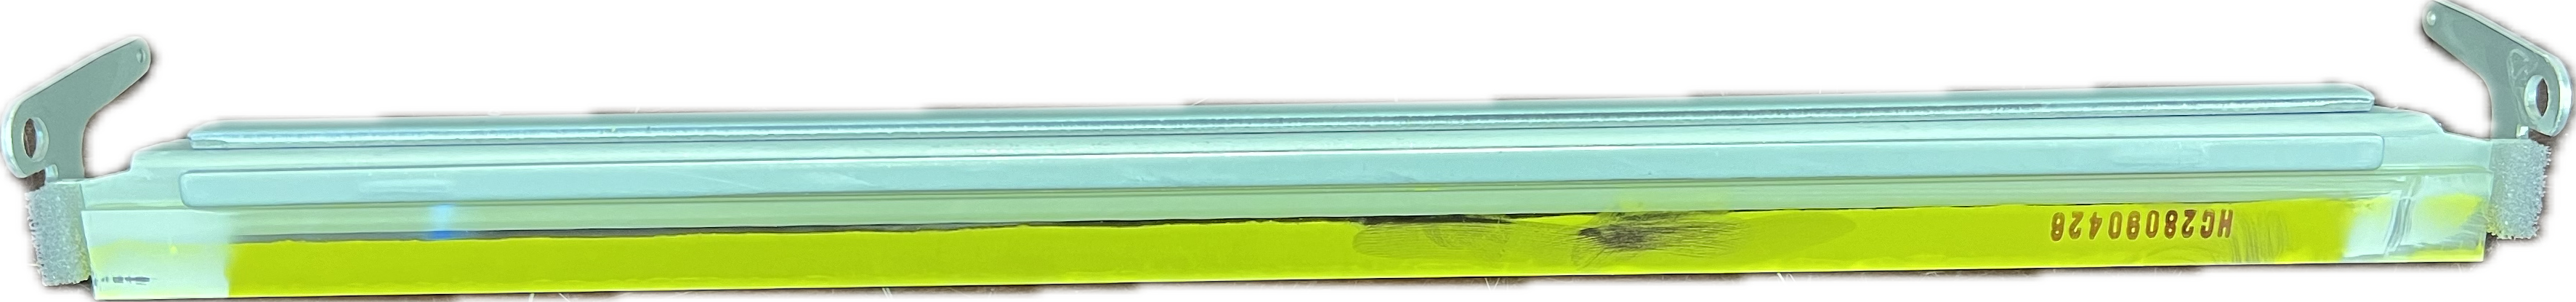 Konica Minolta Belt Cleaning Blade | A5AWR70P11